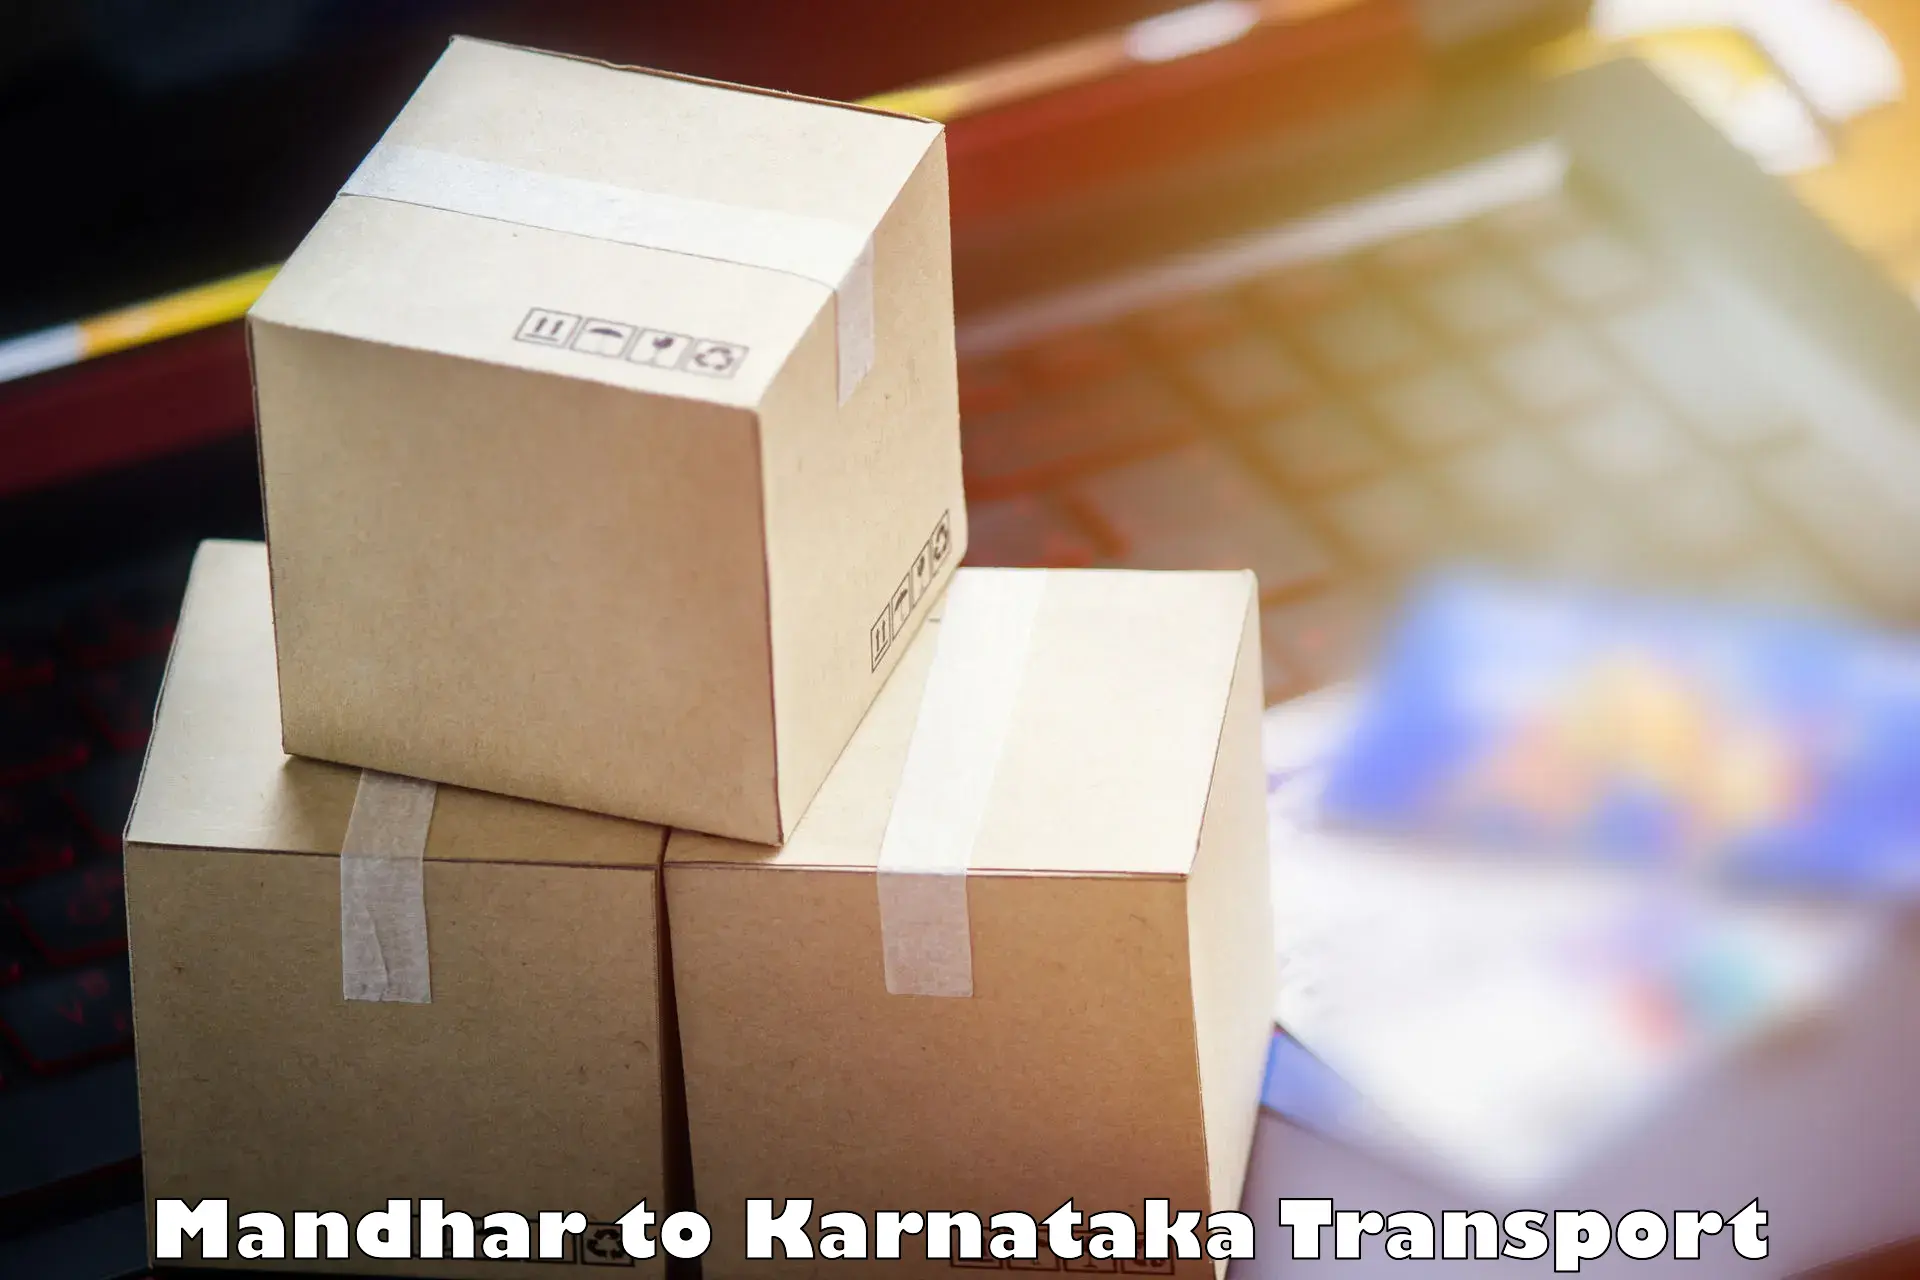 Online transport service Mandhar to Bantwal